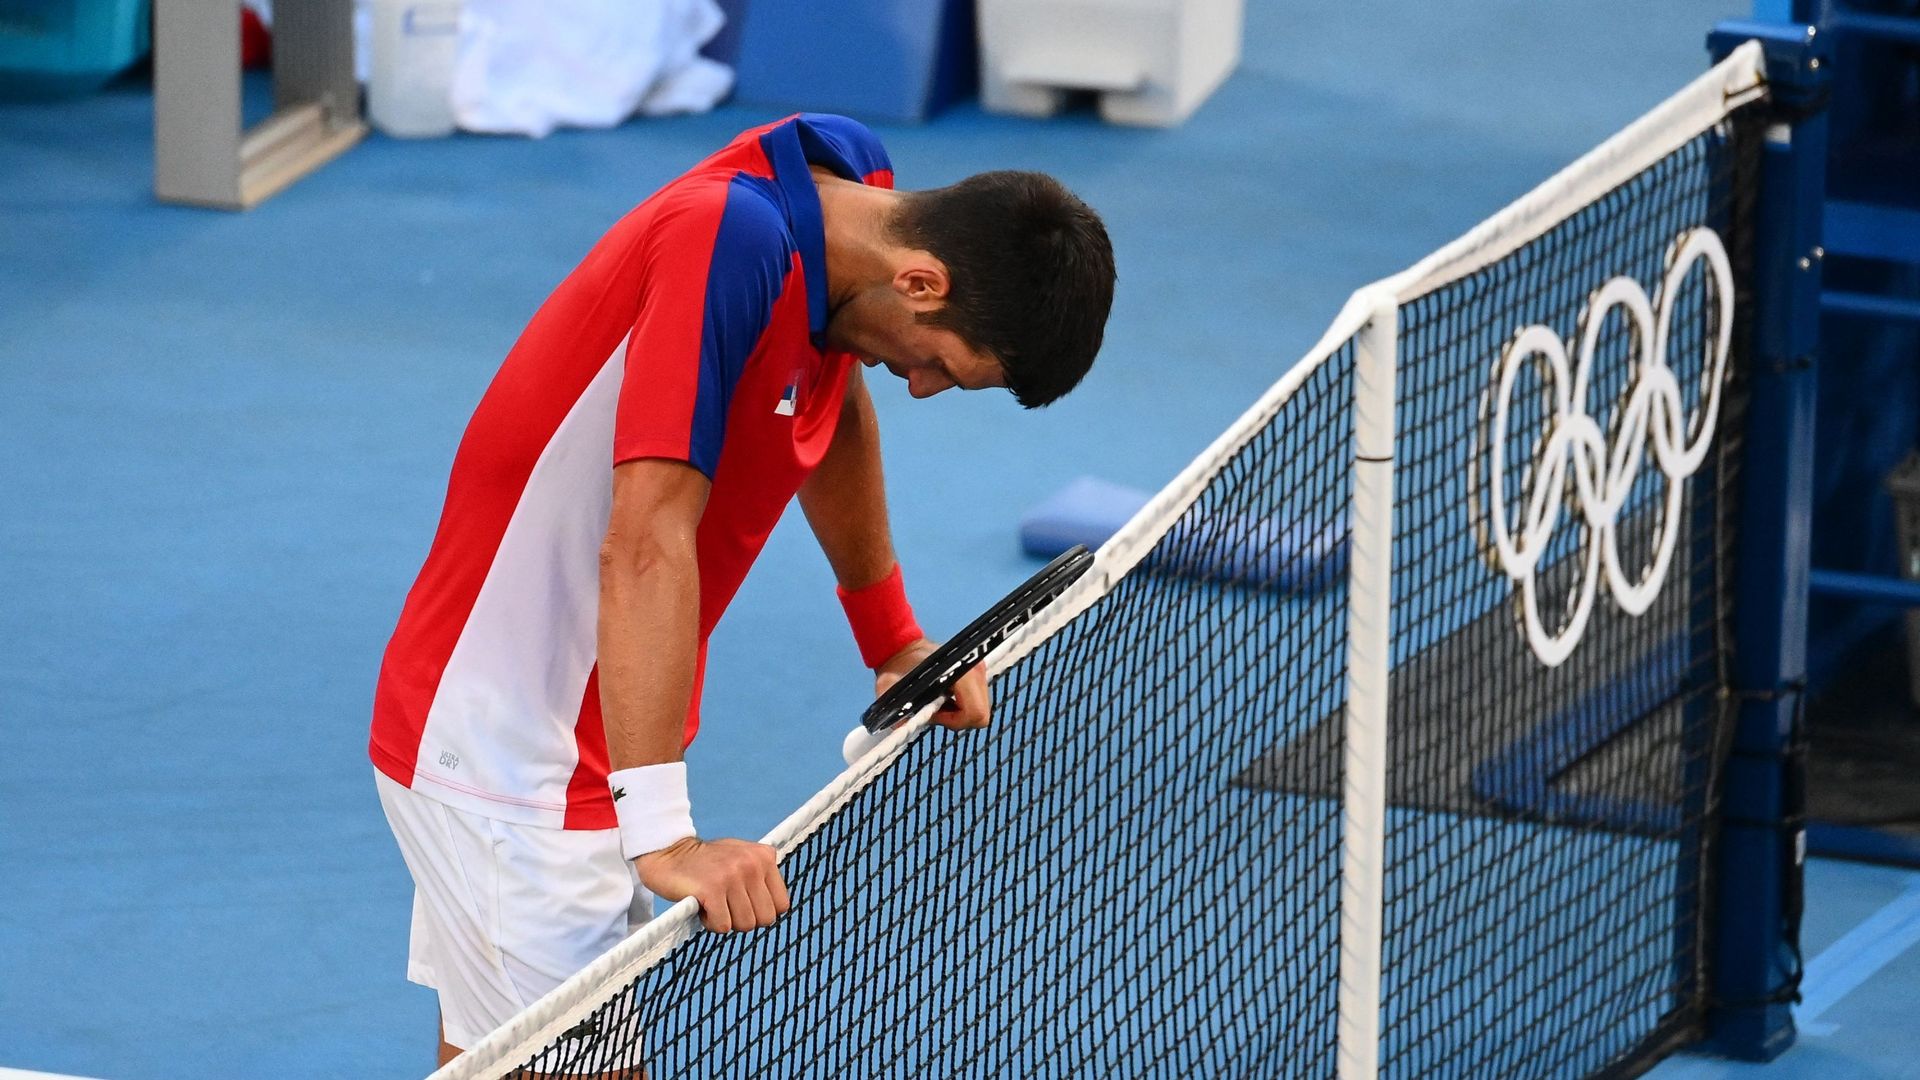 Novak Djokovic s'est incliné en finale pour le bronze face à Carreno Busta et repart bredouille de Tokyo.